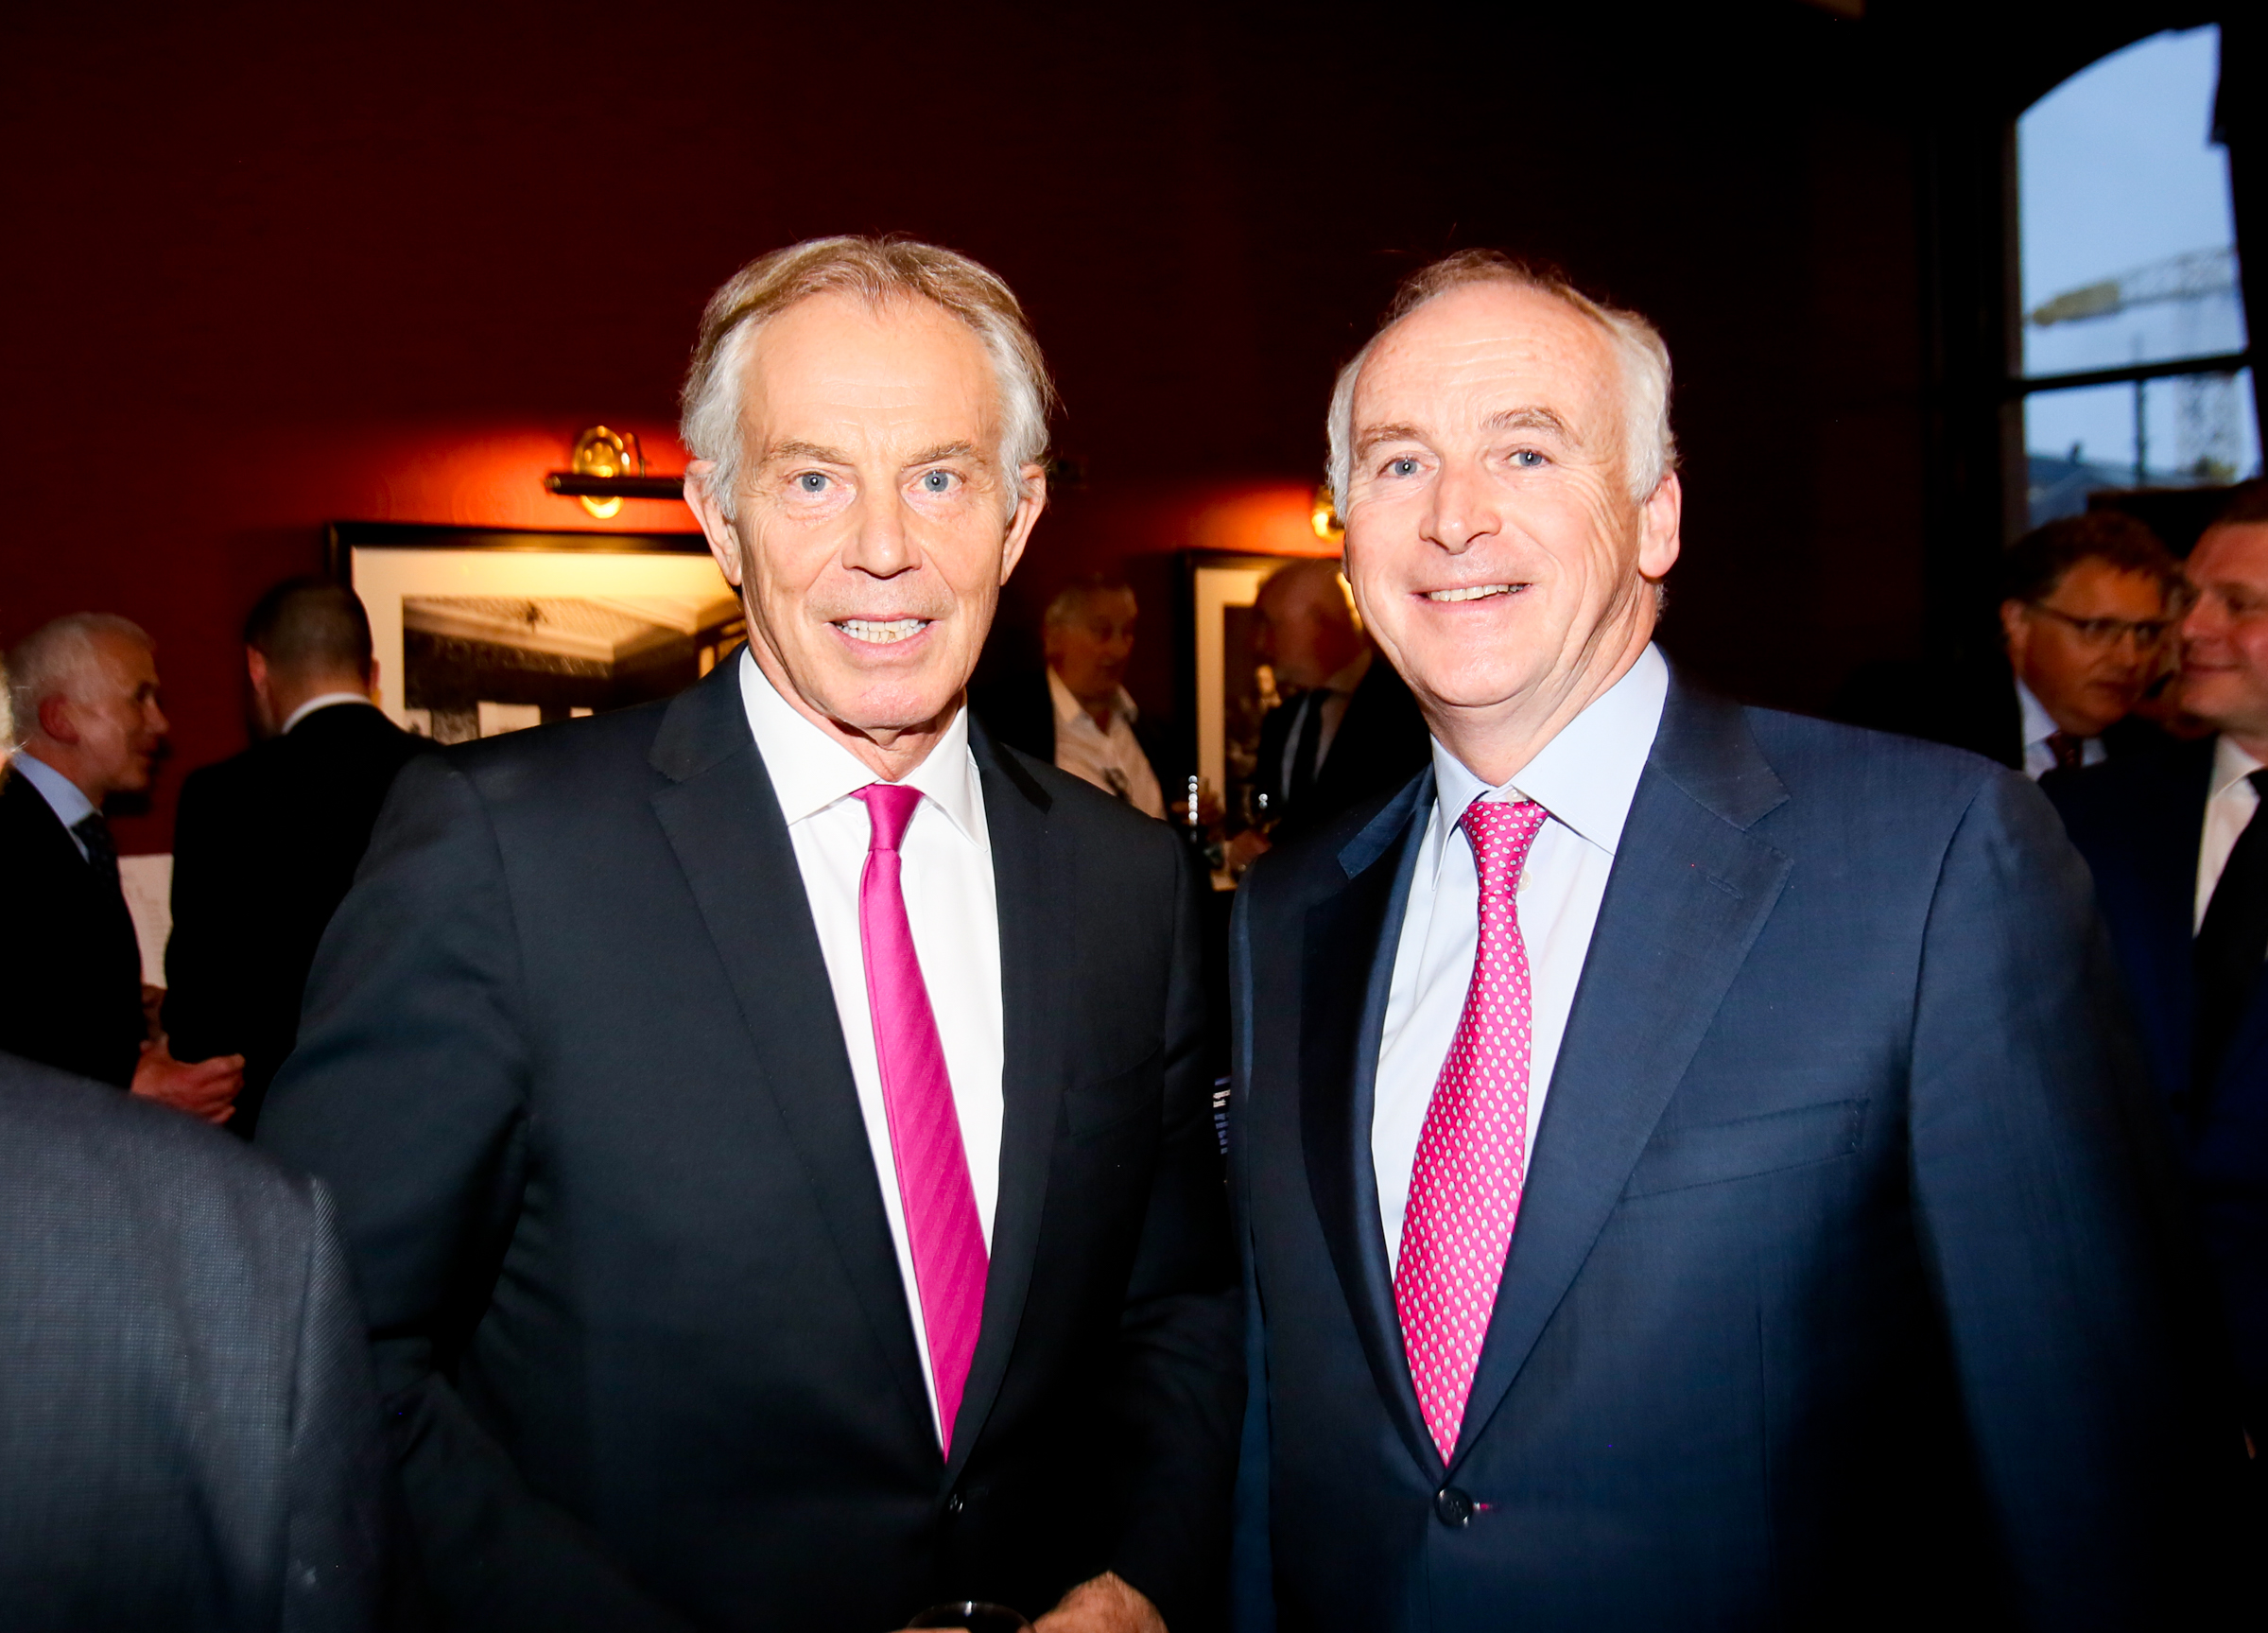  Tony Blair with hotelier John Fitzpatrick 